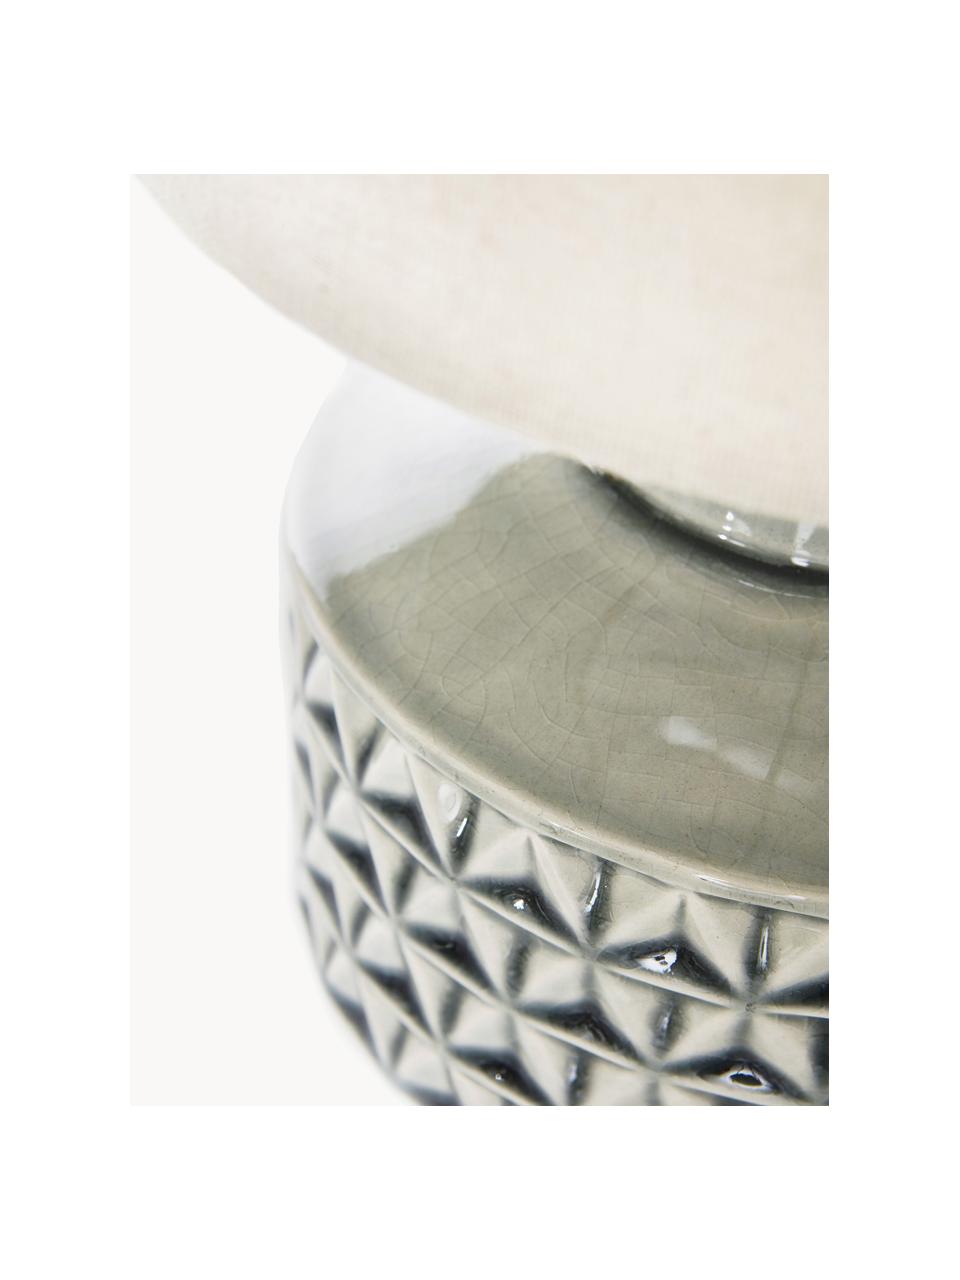 Malá stolní lampa s keramickou podstavou Monica, Béžová, šedá, Ø 23 cm, V 33 cm